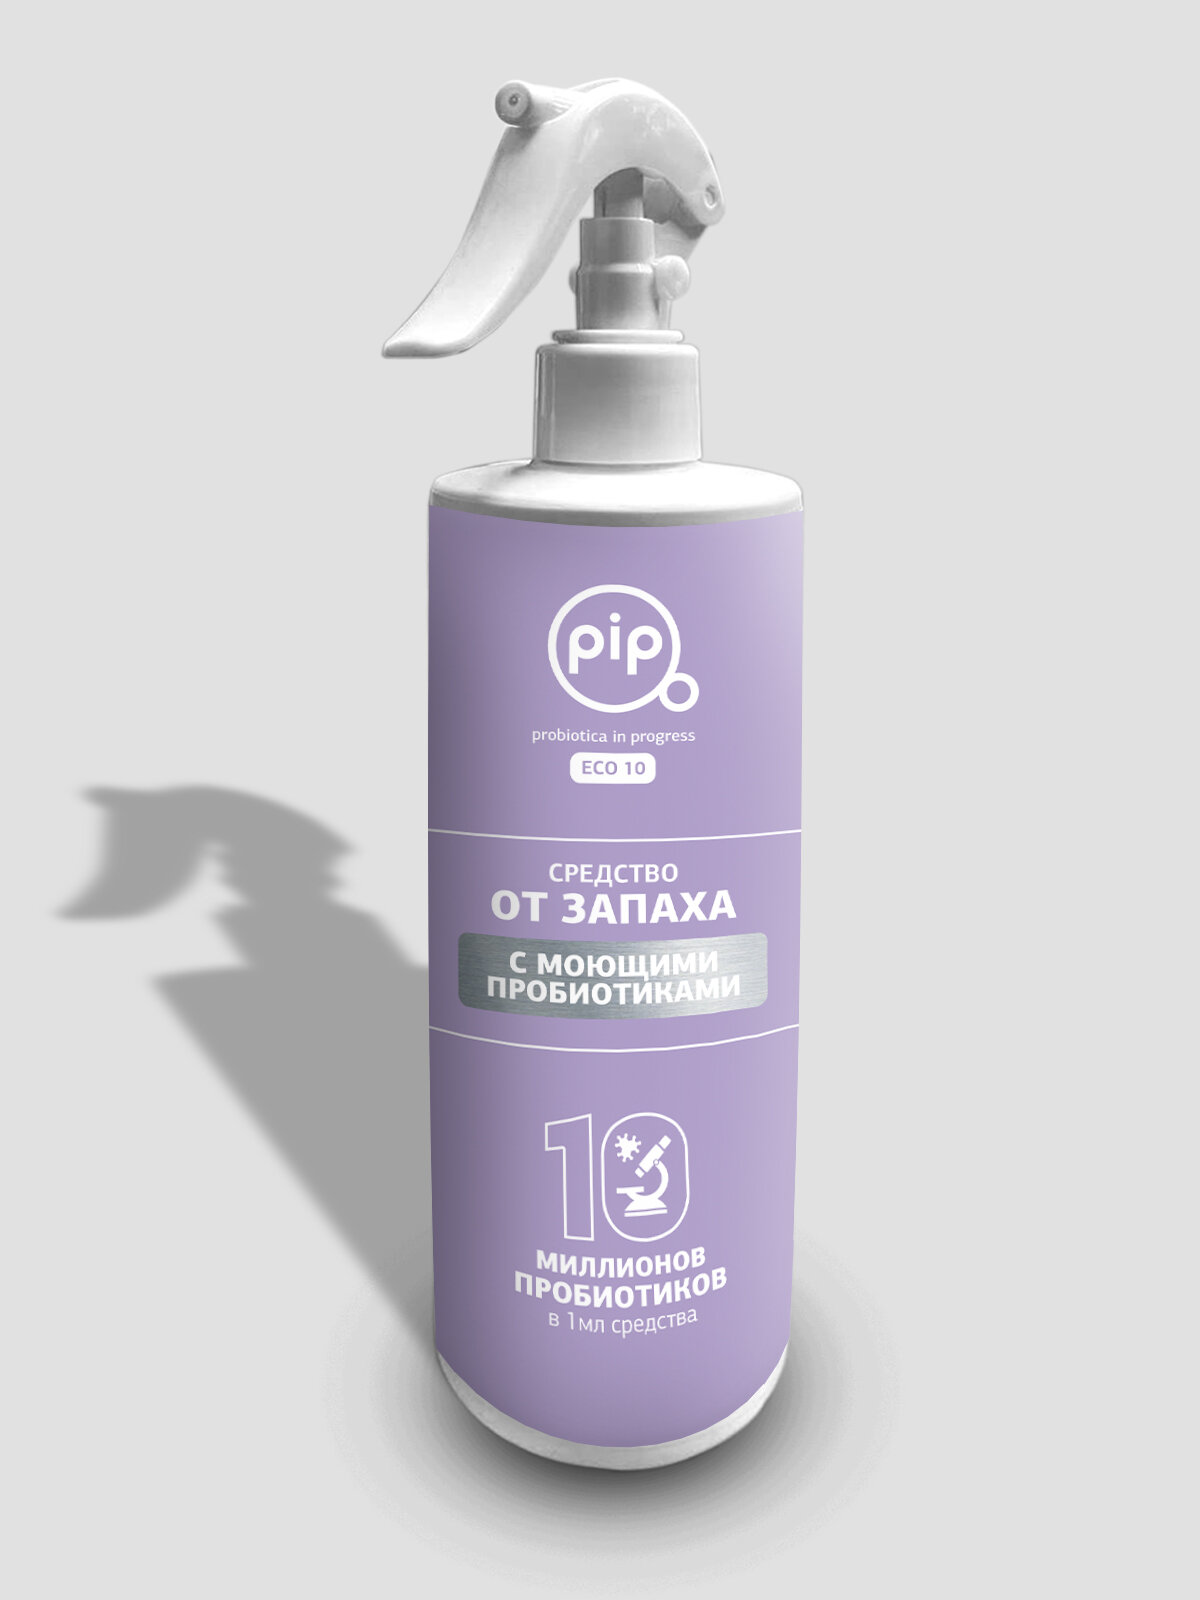 PiP Средство от запаха с моющими пробиотиками